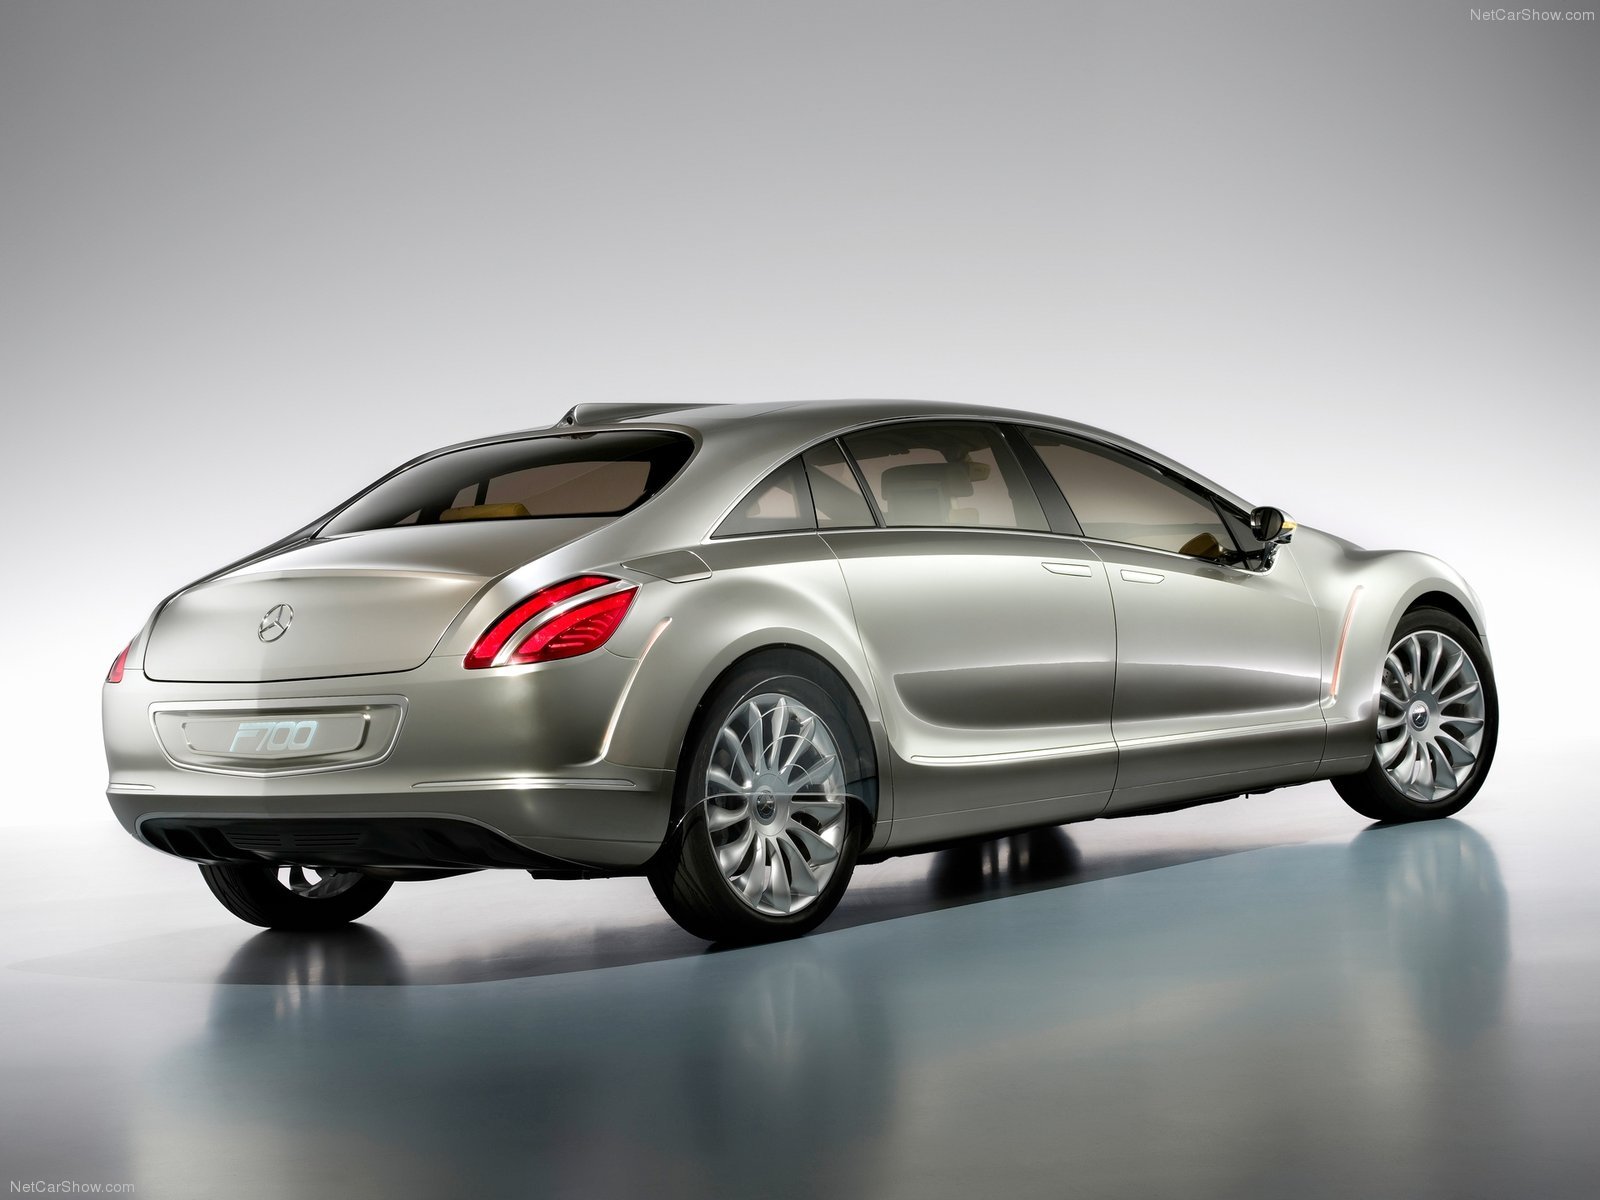 mercedes, Benz, F700, Concept, Cars, 2007 Wallpaper